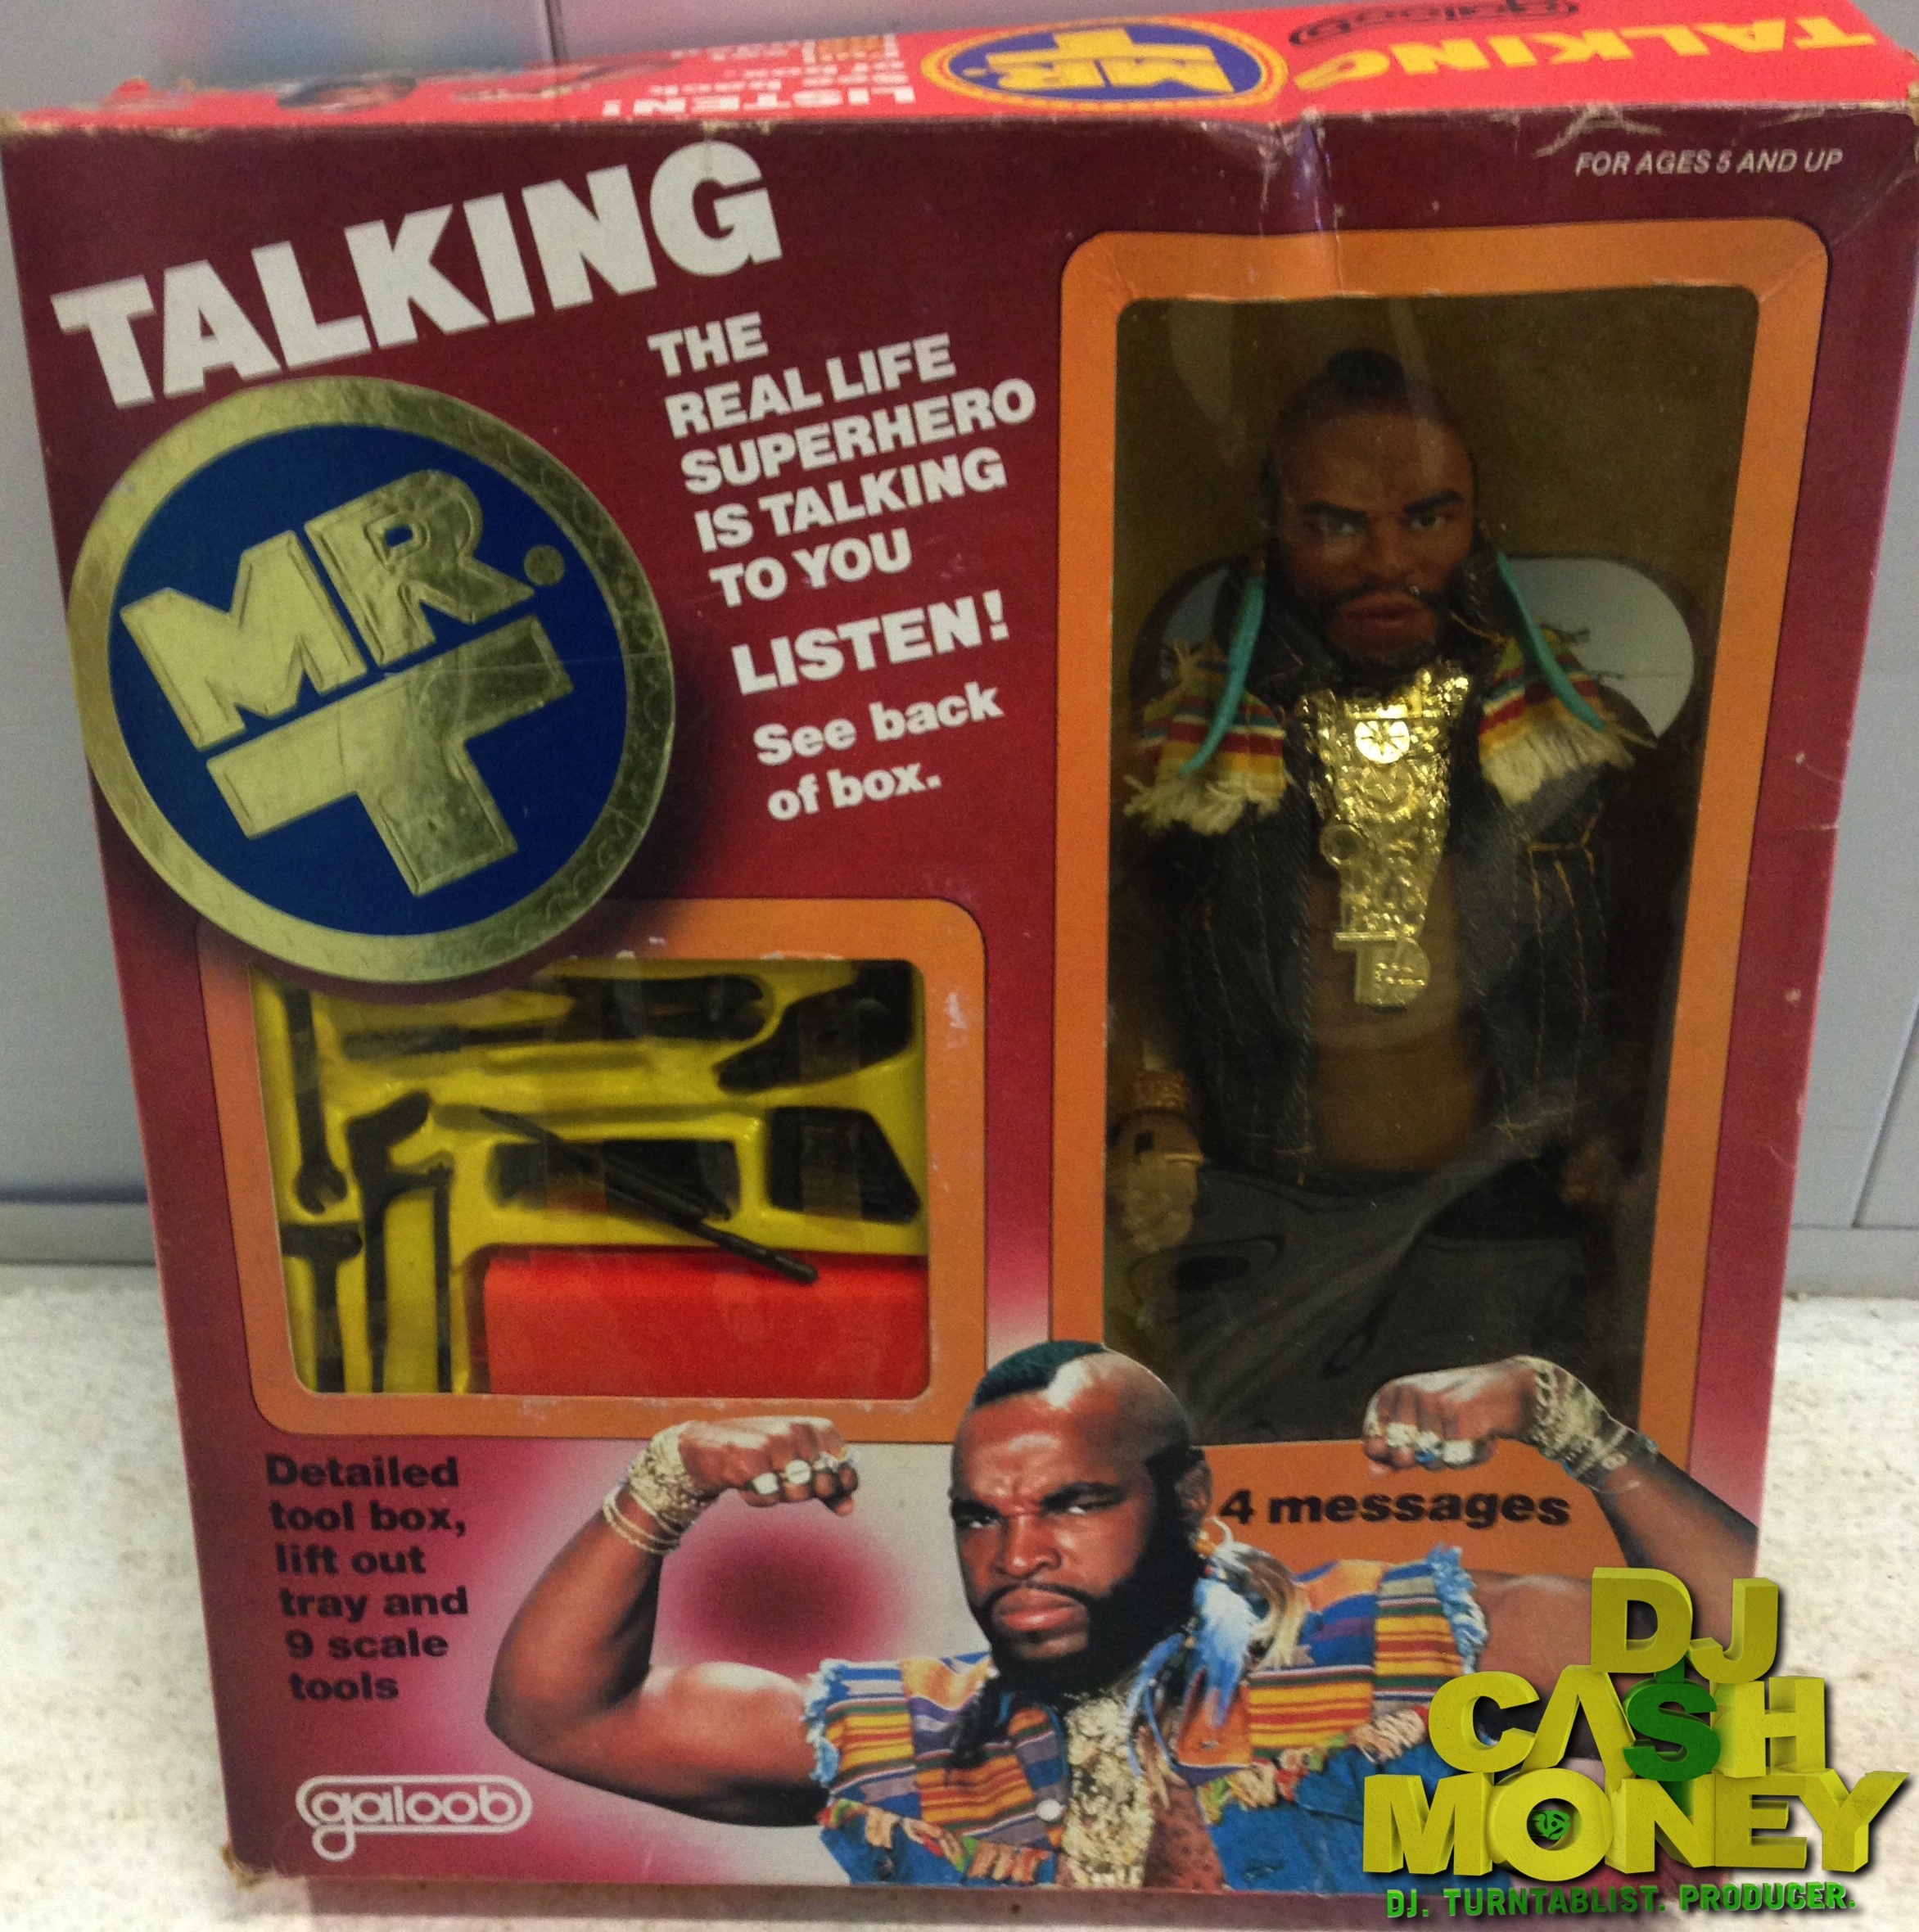 The Talking Mr. T figure